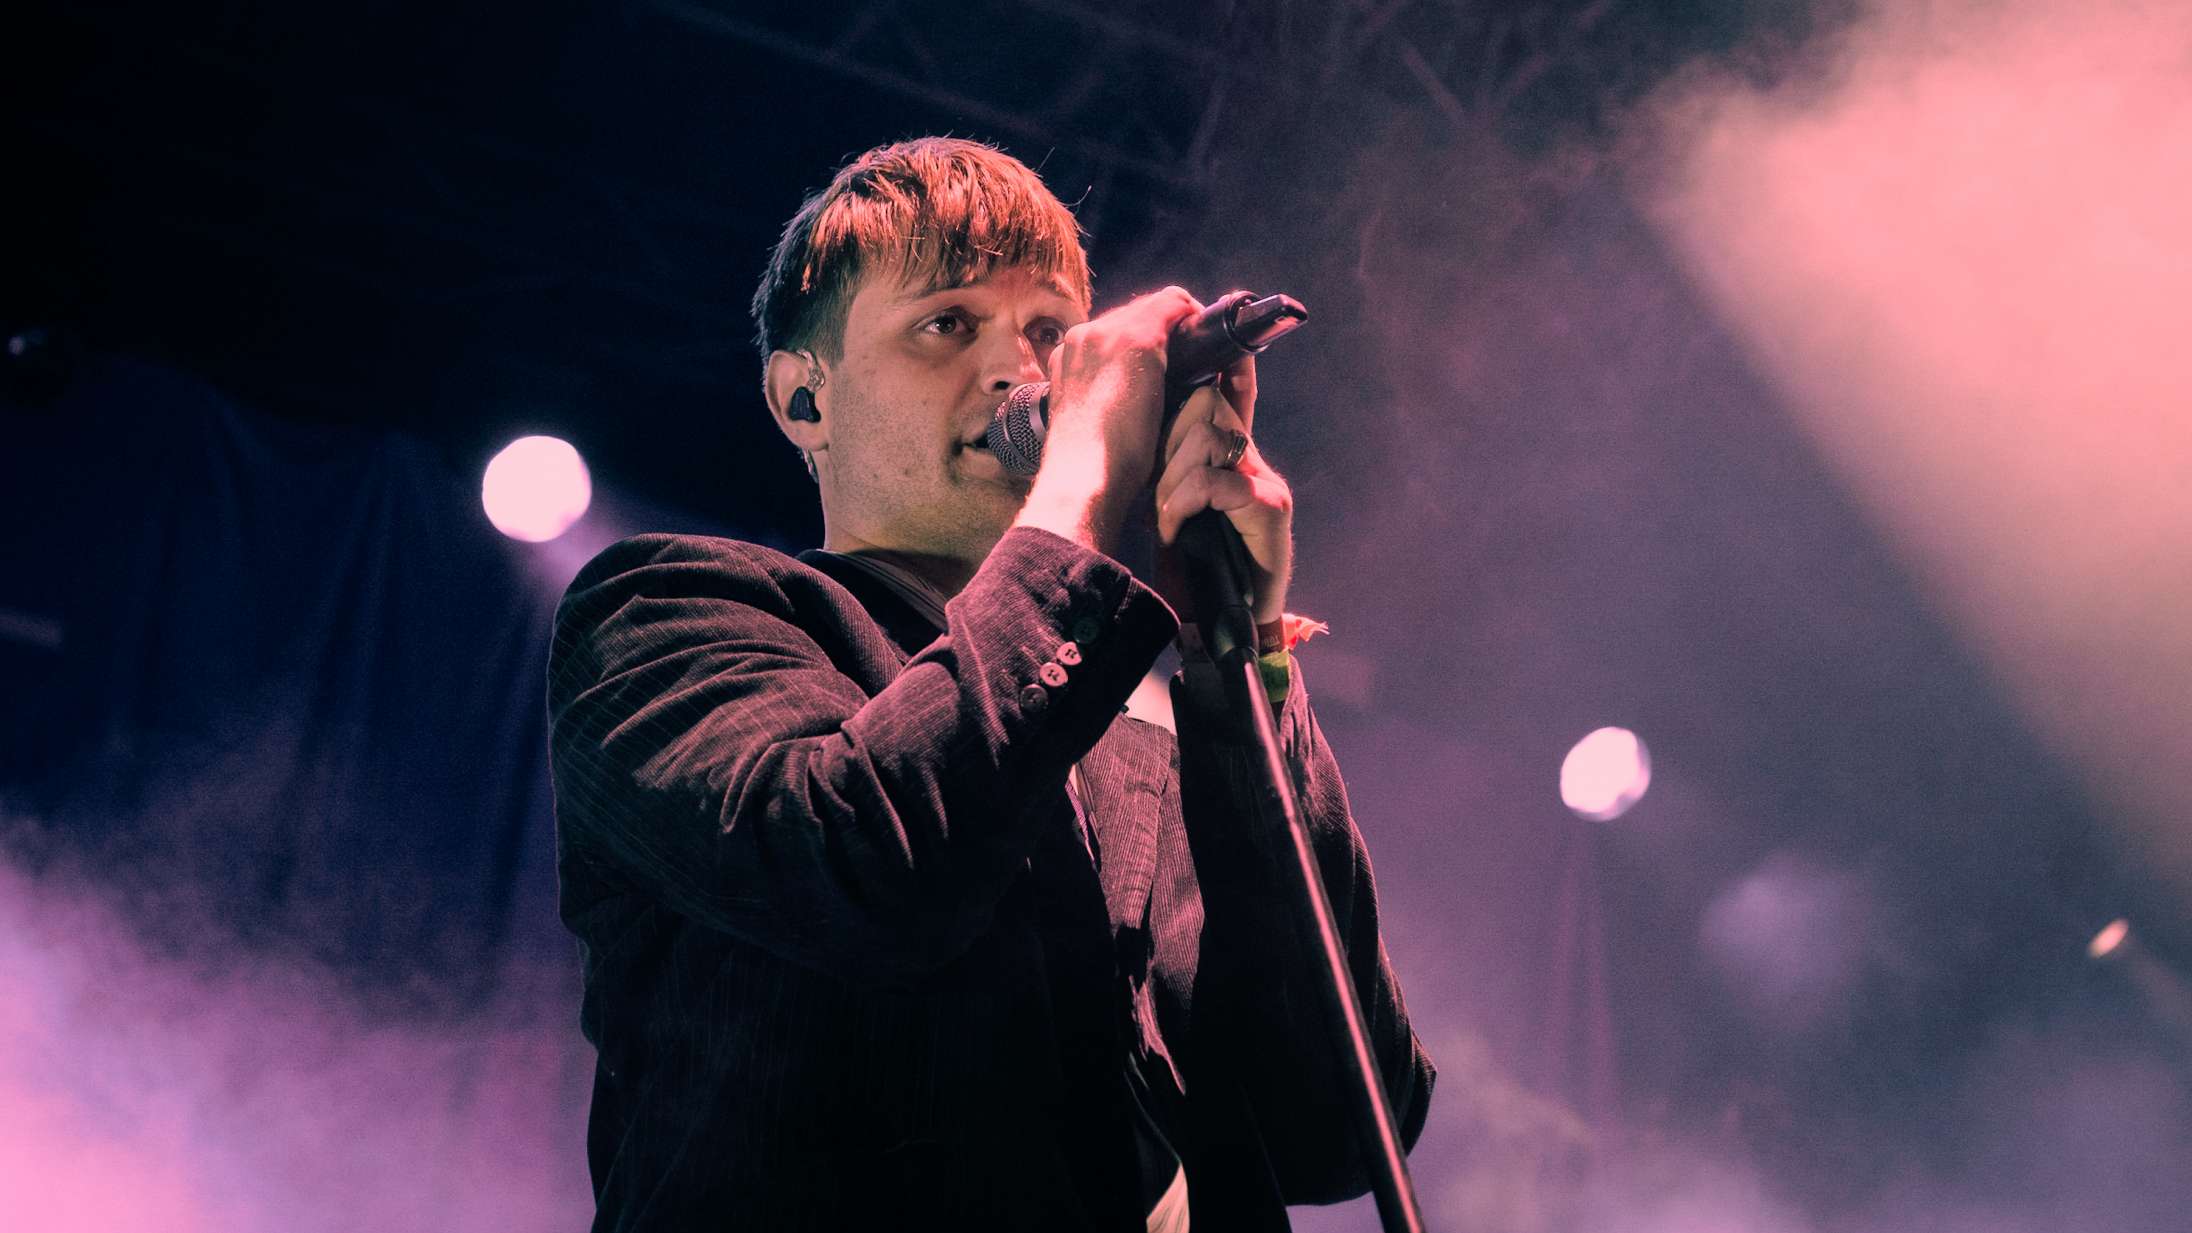 Zar Paulo foreviger deres store Roskilde Festival-koncert i ny musikvideo – se ‘Elendig software’